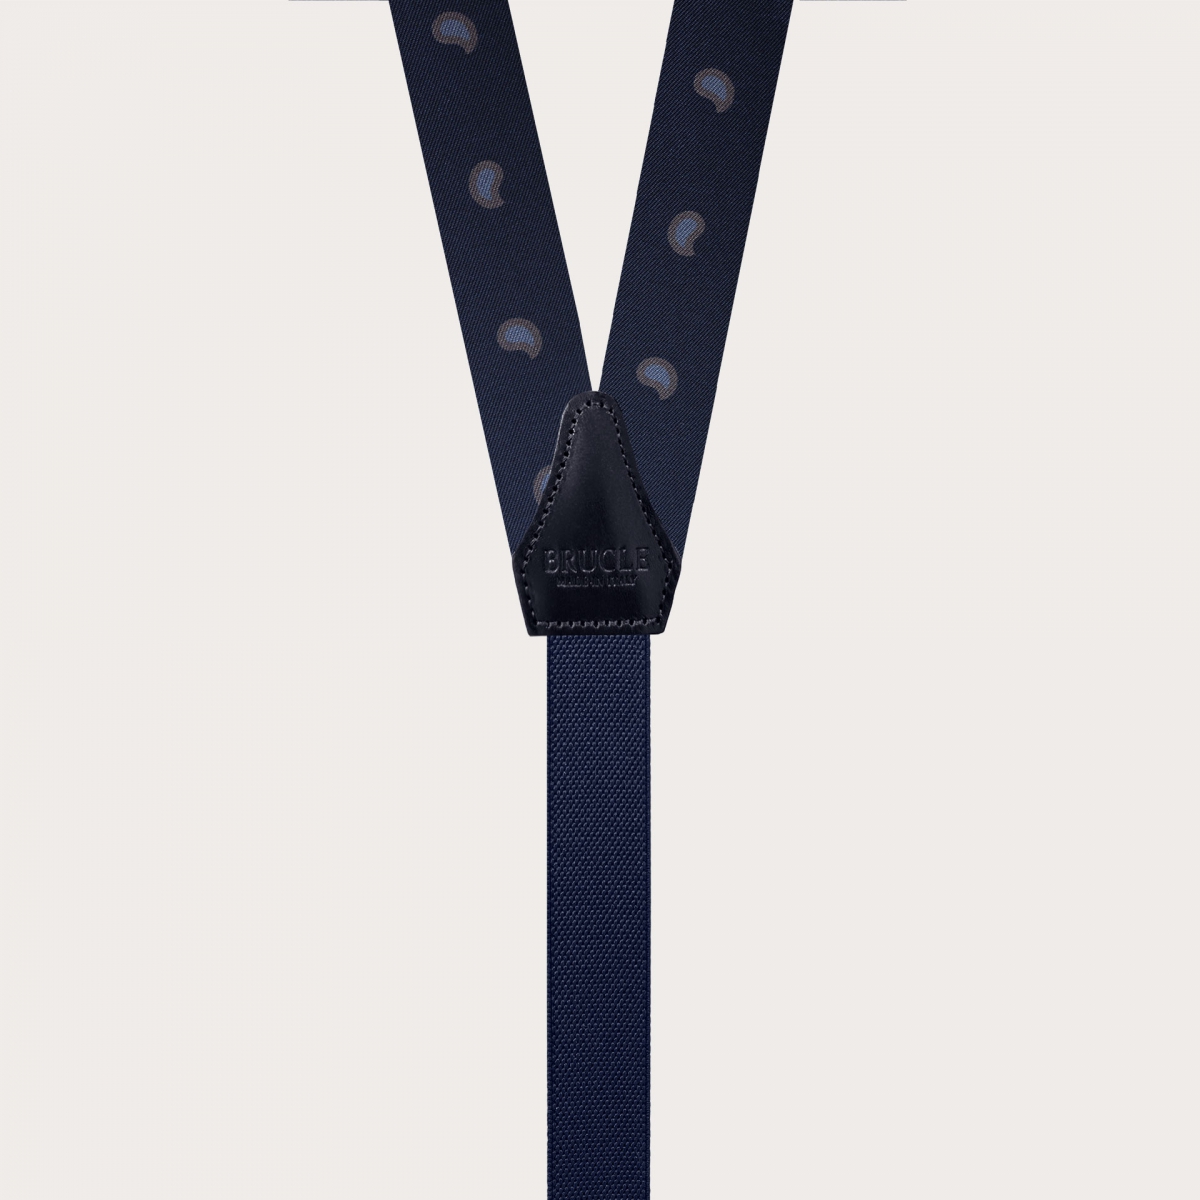 Slim Y-shape fabric suspenders in printed silk, blue paisley pattern